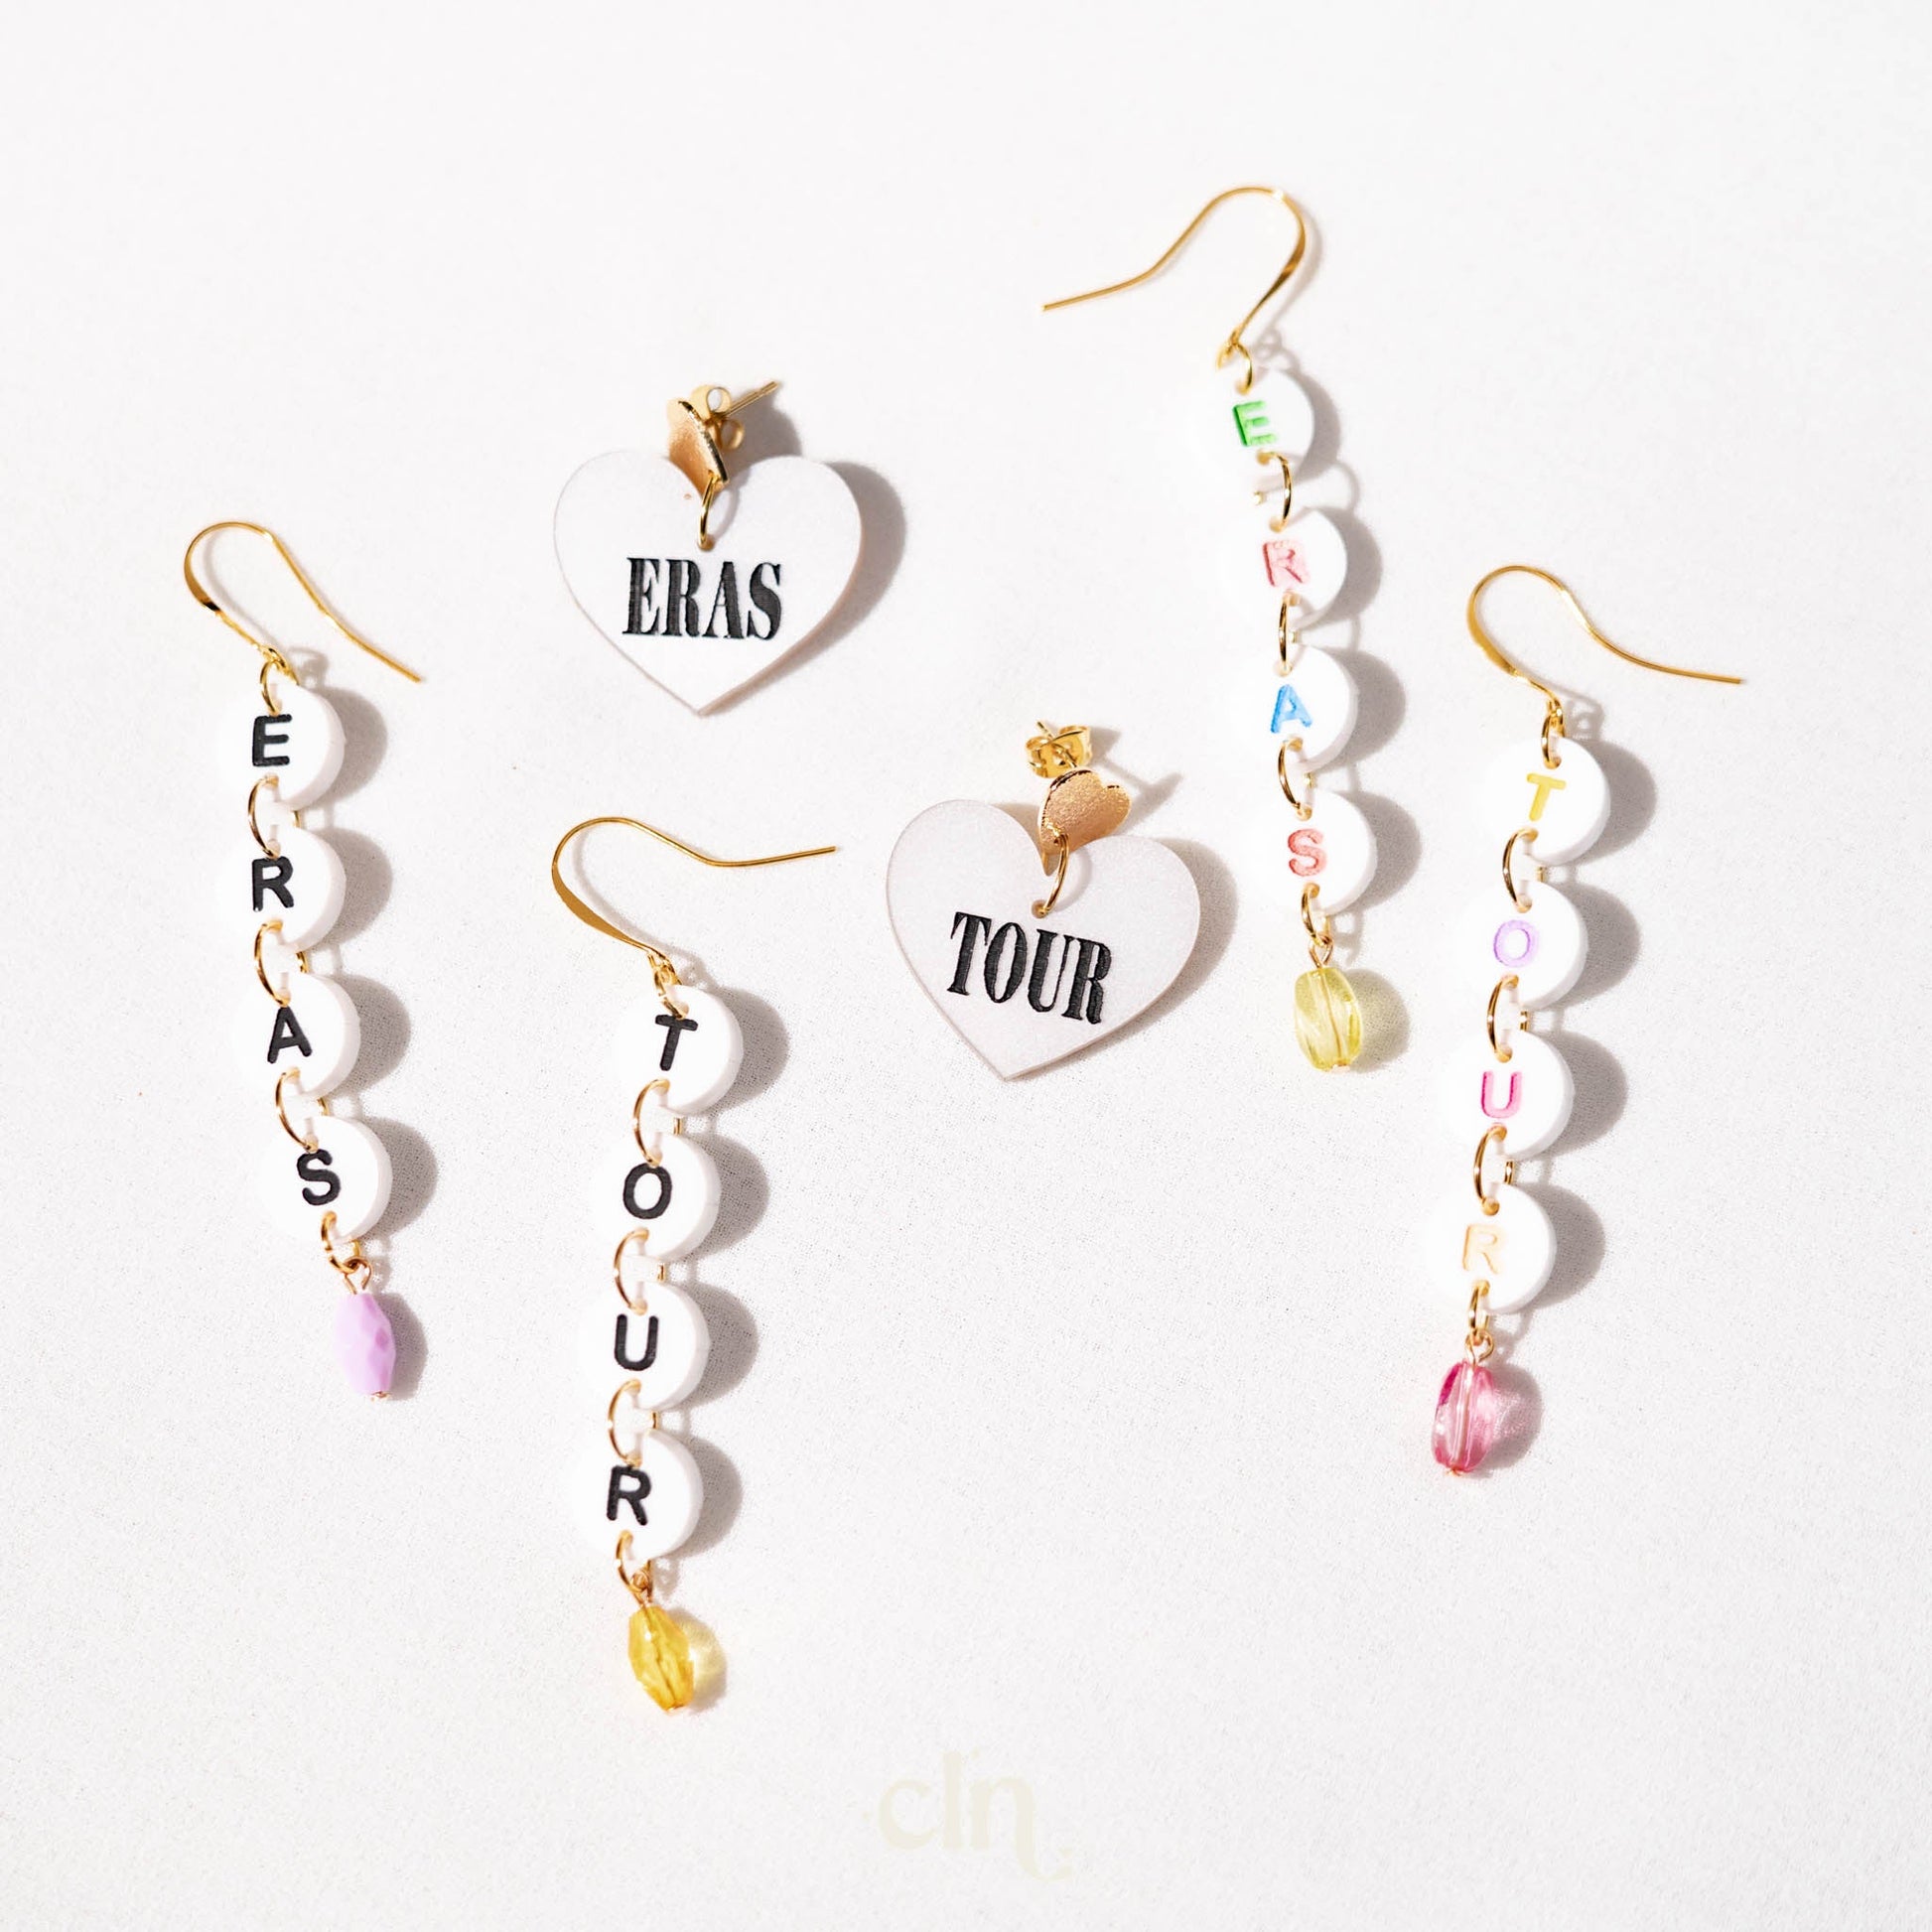 Make the friendship bracelets - Folklore Taylor Swift earrings - Earrings - CLN Atelier